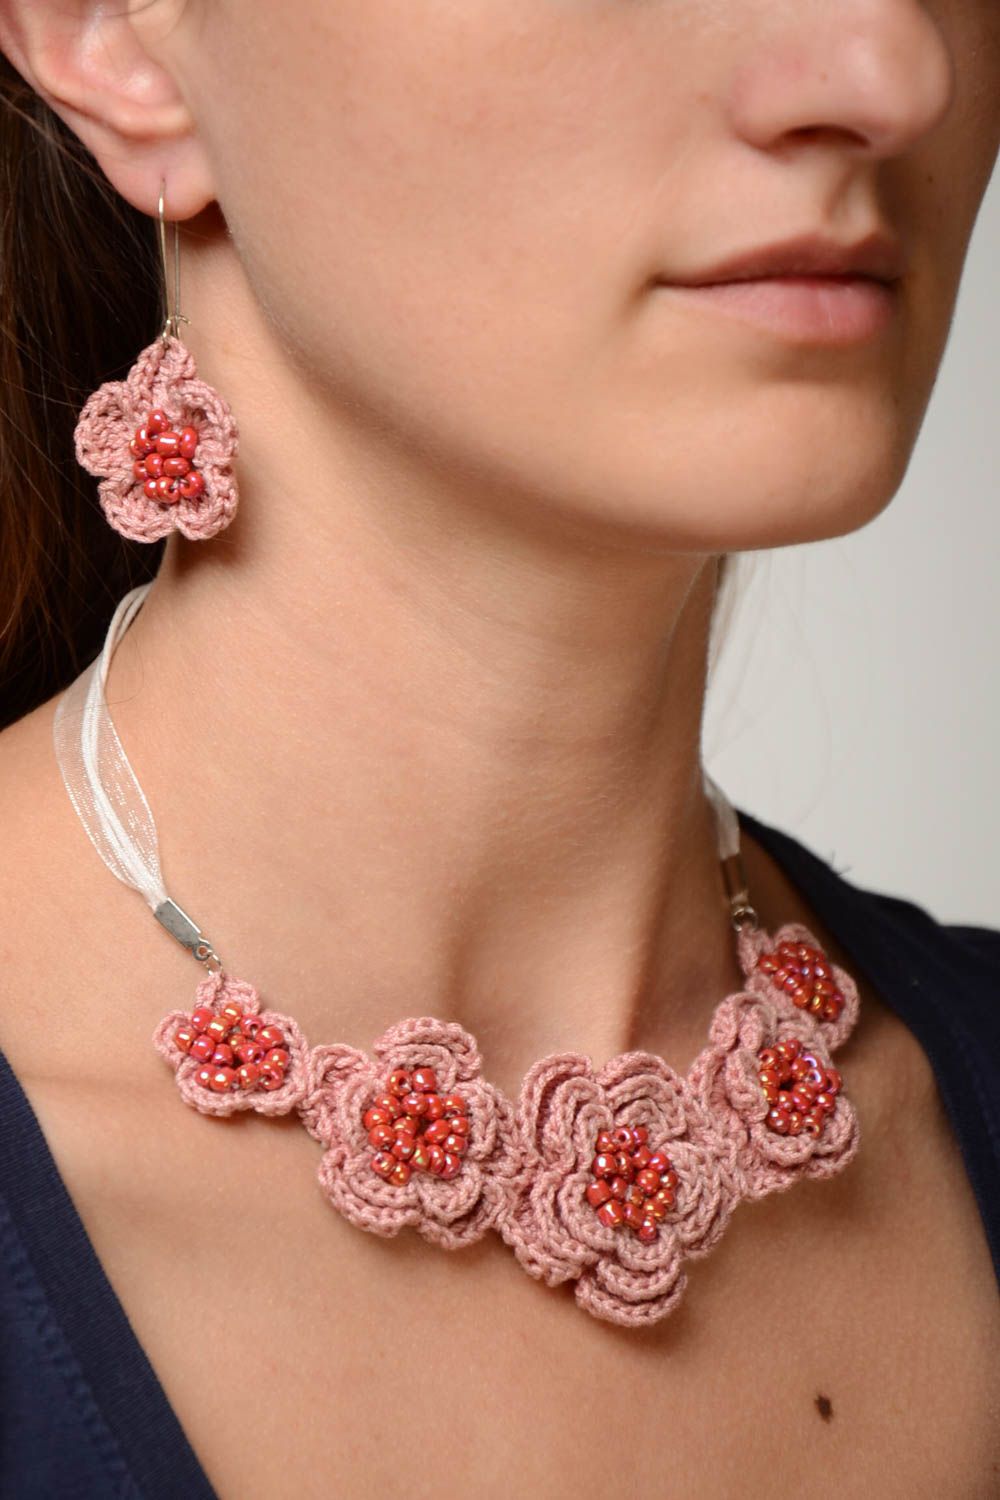 Textil Schmuckset in Rosa Collier und Ohrringe gehäkelt schön handgemacht foto 1